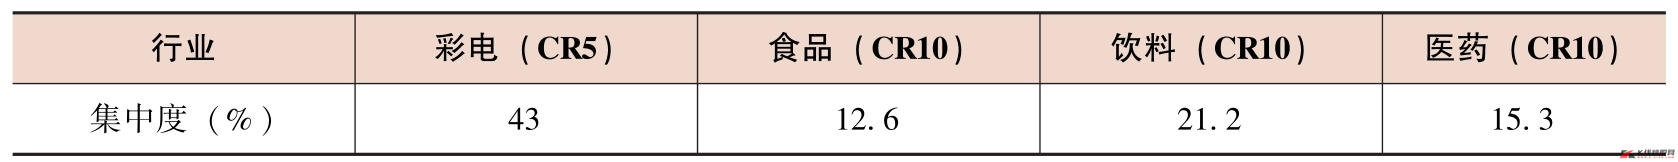 CR为市场集中度的英文简写。